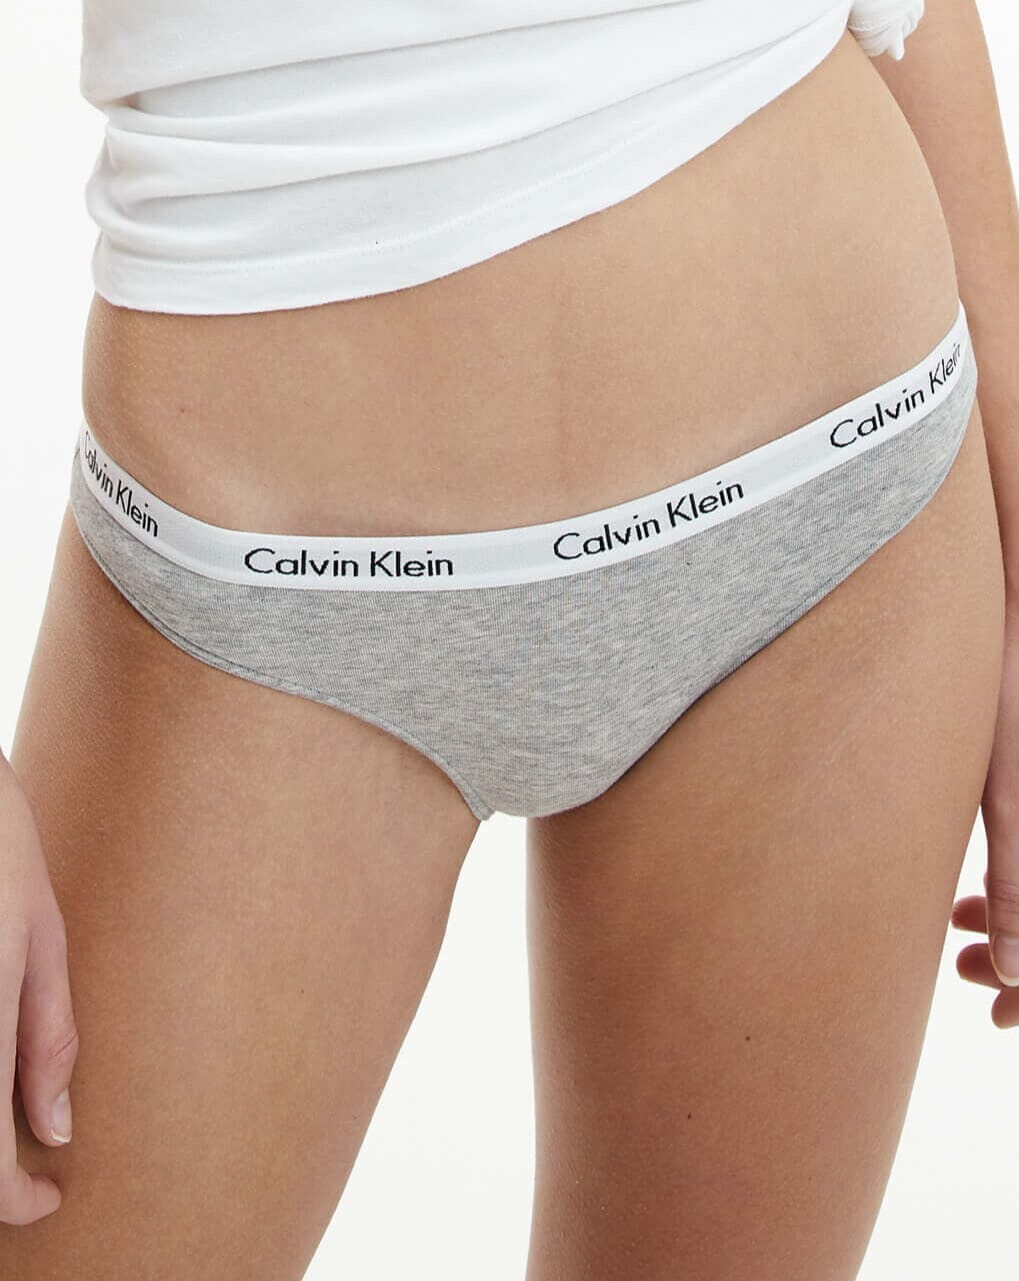 Calvin Klein Women's Thong 3 Pack White Gray Black Underwear M Medium New